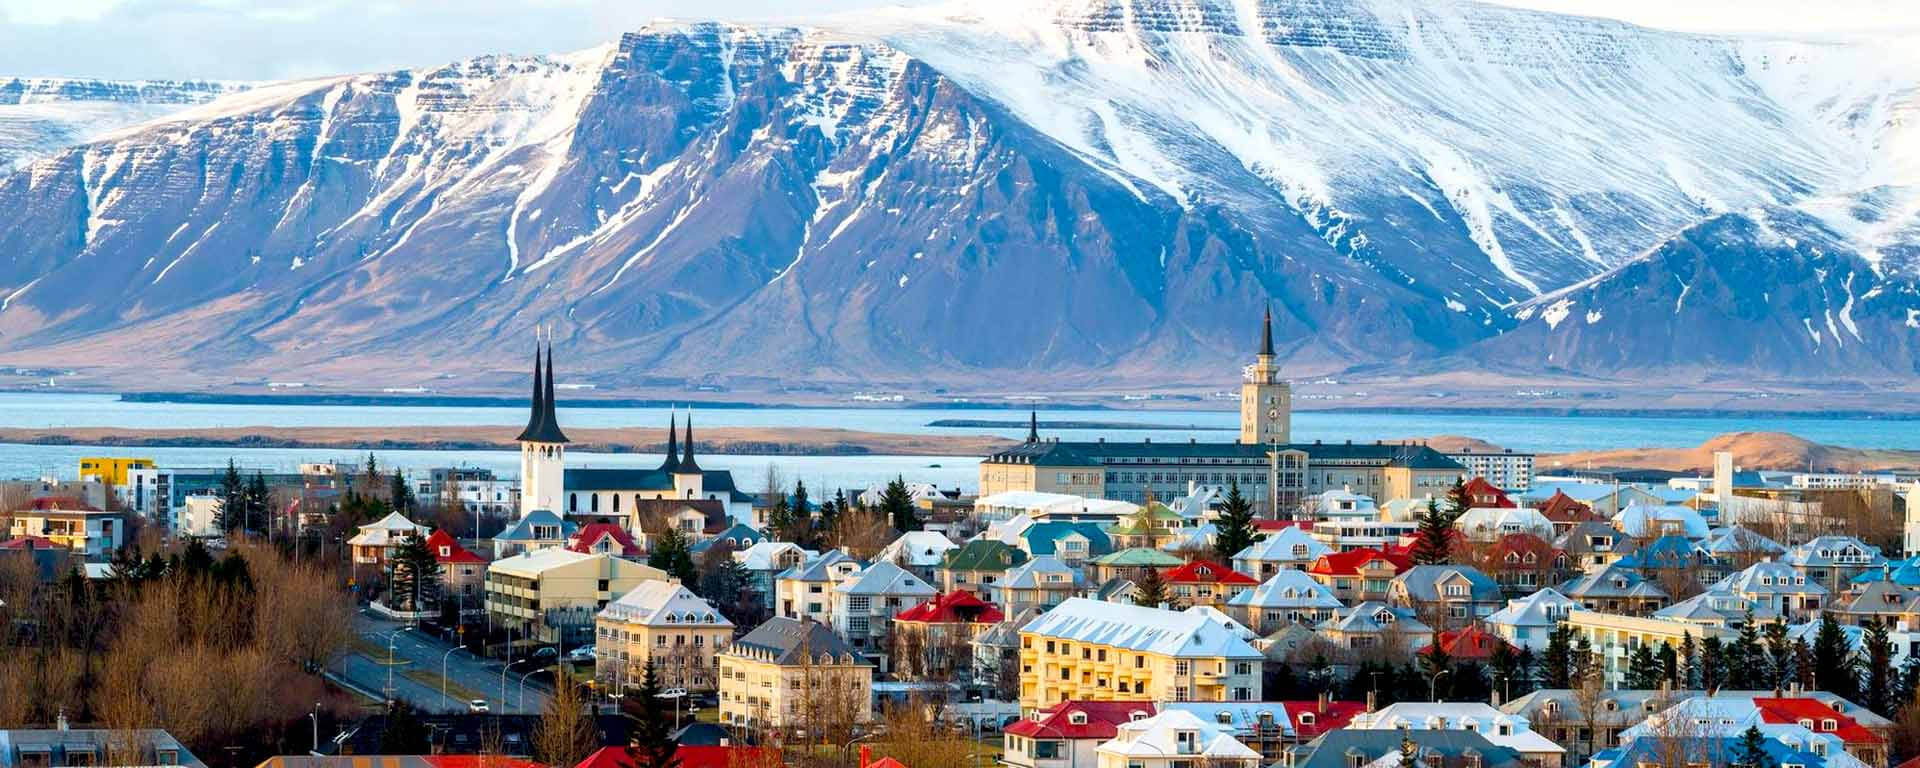 Reykjavik Tour Packages